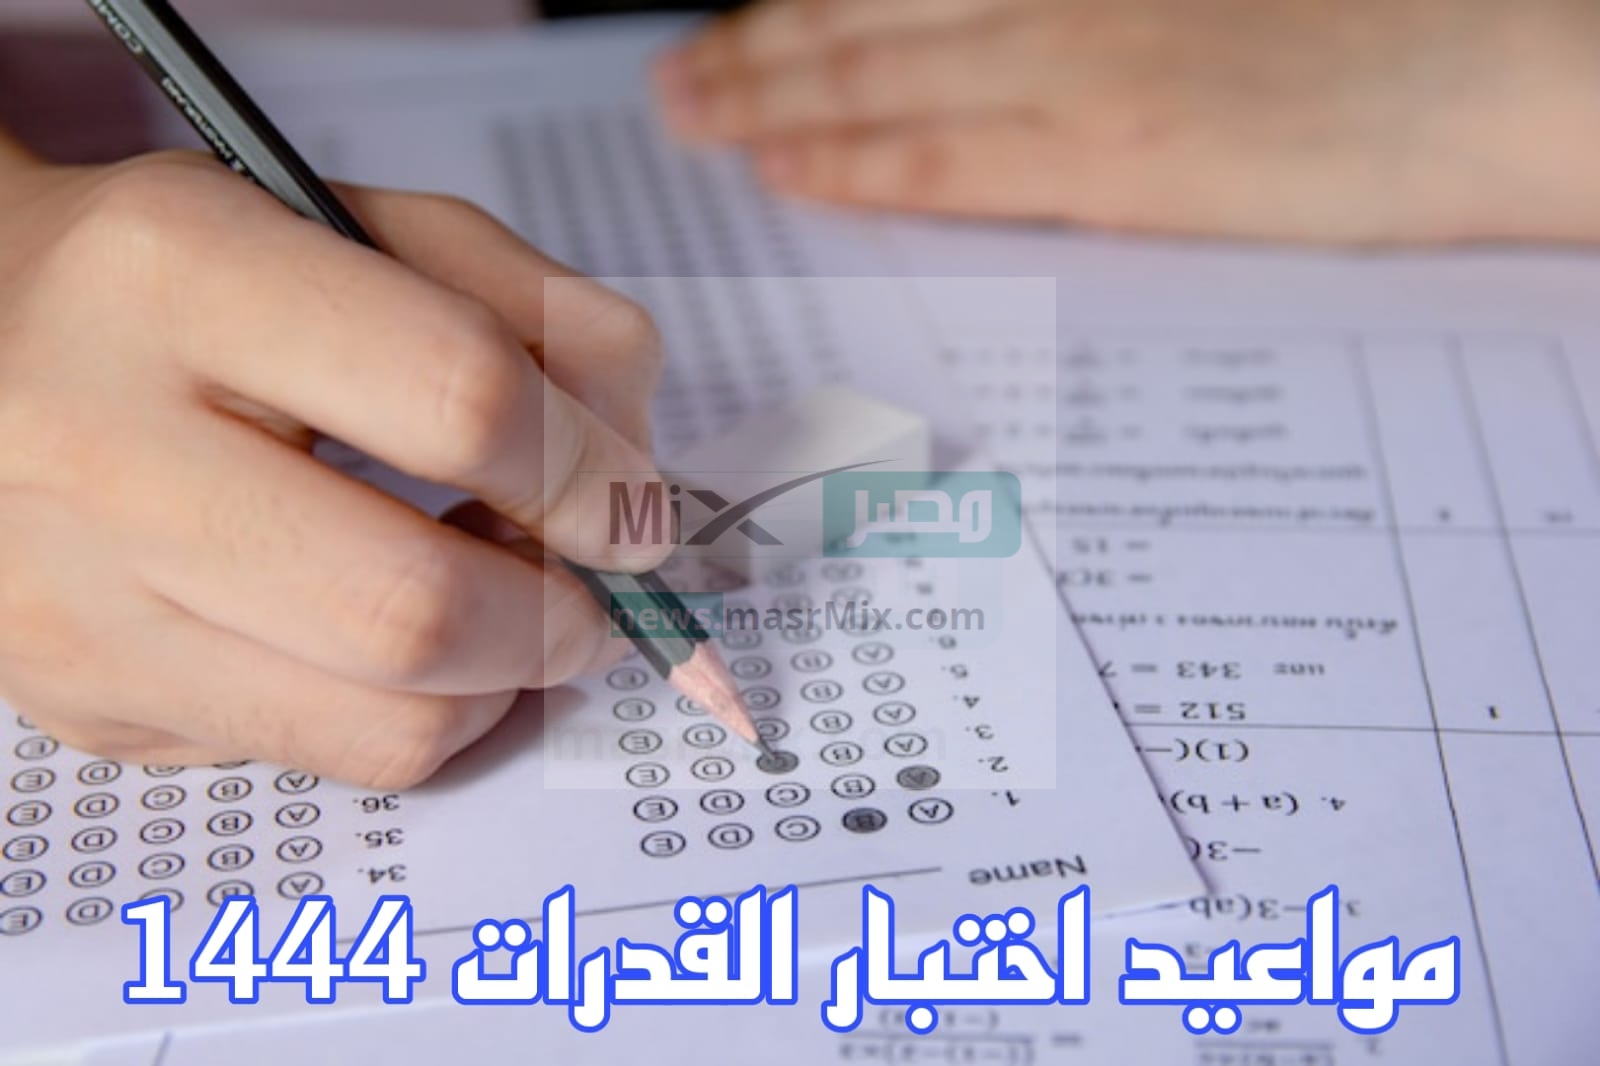 قياس يُعلن رسميًا عن مواعيد اختبار القدرات 1444 وآليه التسجيل عبر الإنترنت - مدونة التقنية العربية